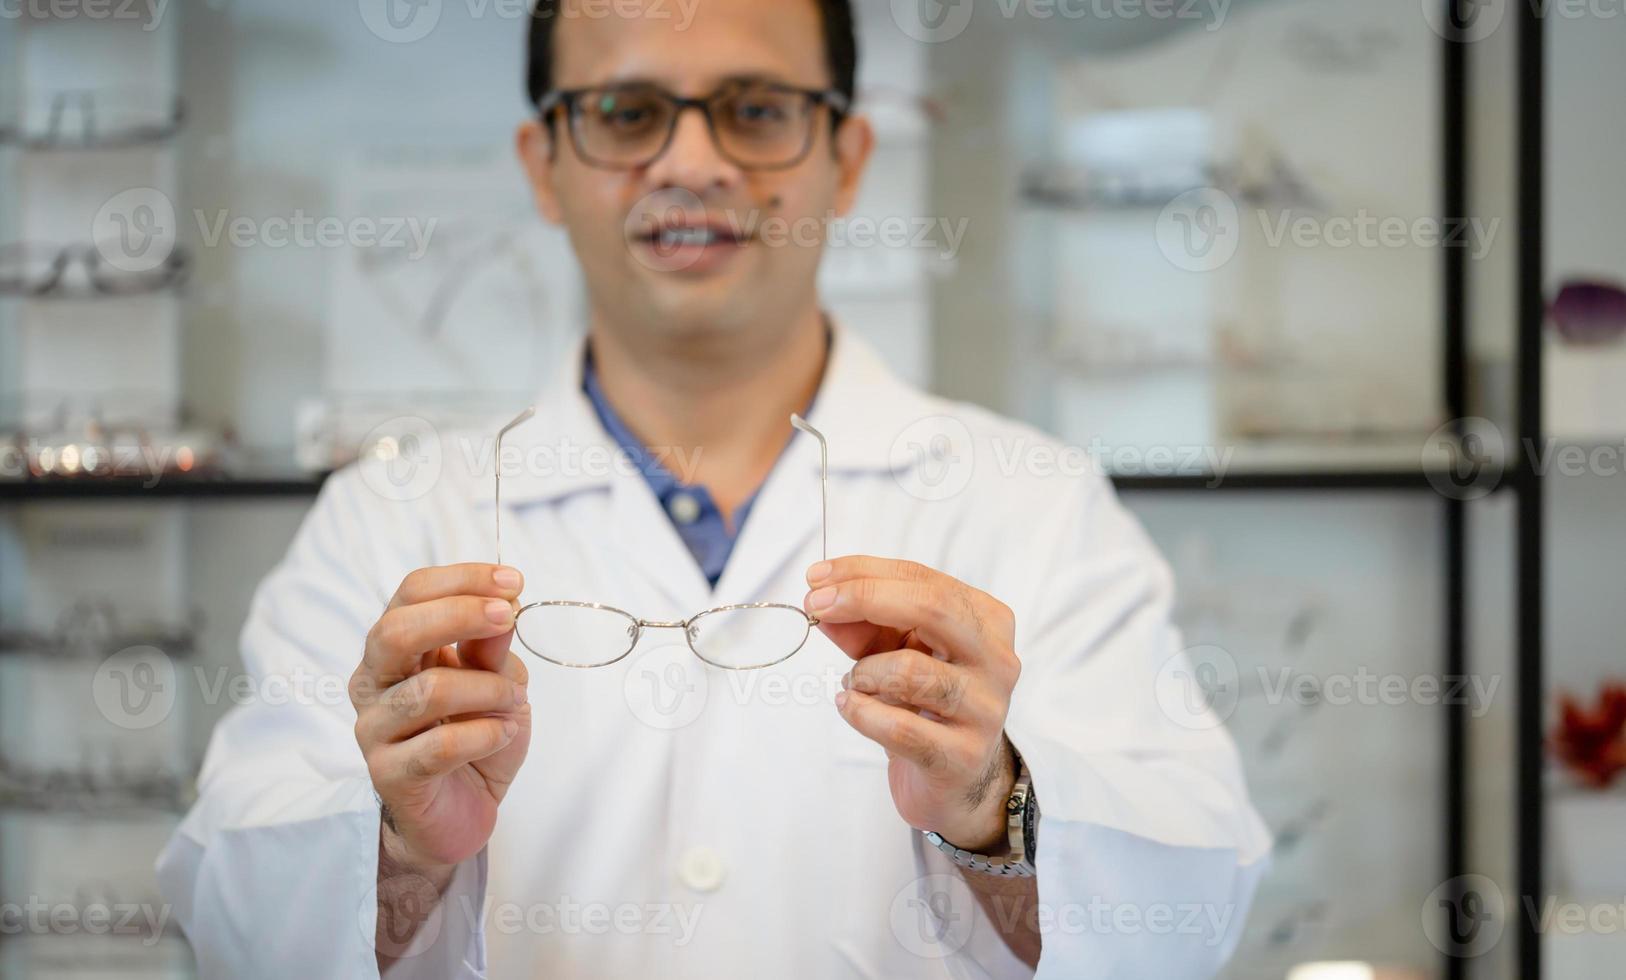 allegro optometrista uomo che tiene gli occhiali nel negozio di ottica, felice uomo indiano che sceglie gli occhiali al negozio di ottica foto